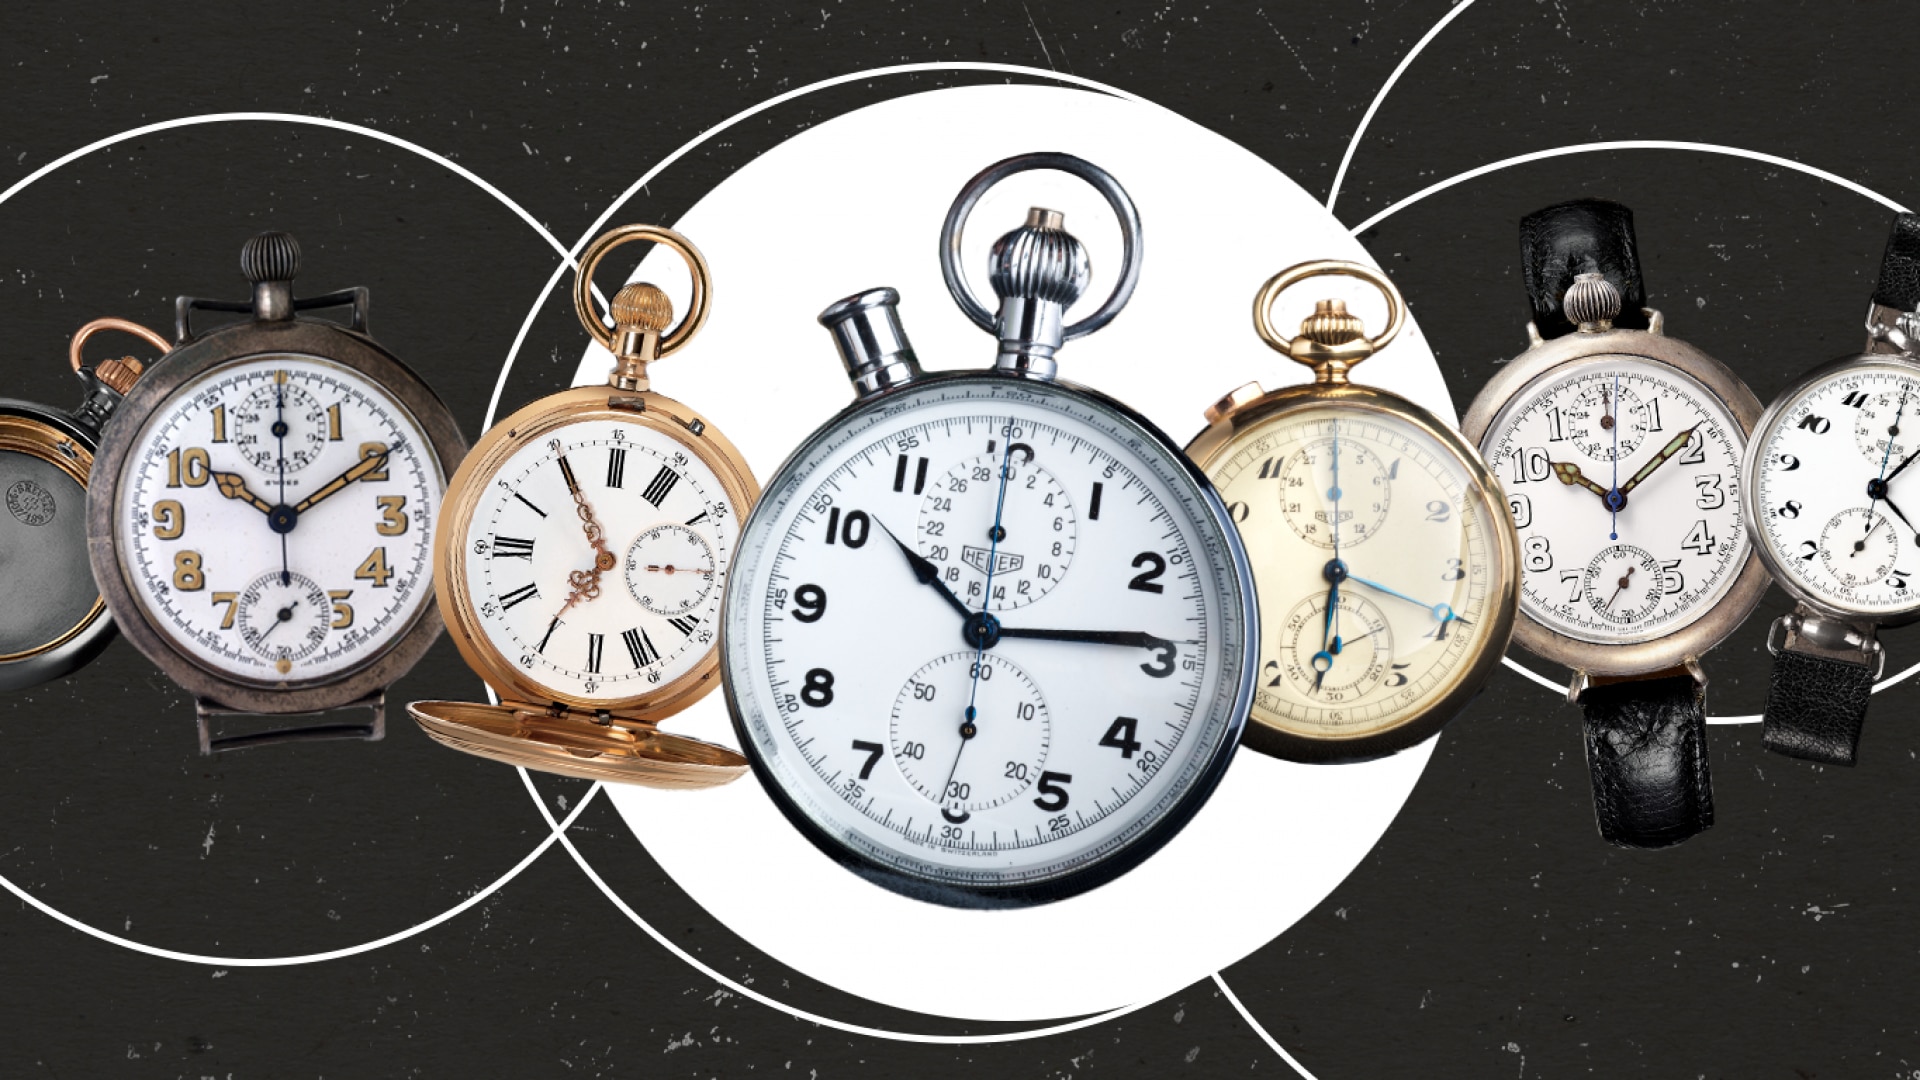 La evolución del reloj de pulsera: ¿Por qué se dejaron de utilizar los relojes de bolsillo? Primera parte| TAG Heuer Official Magazine